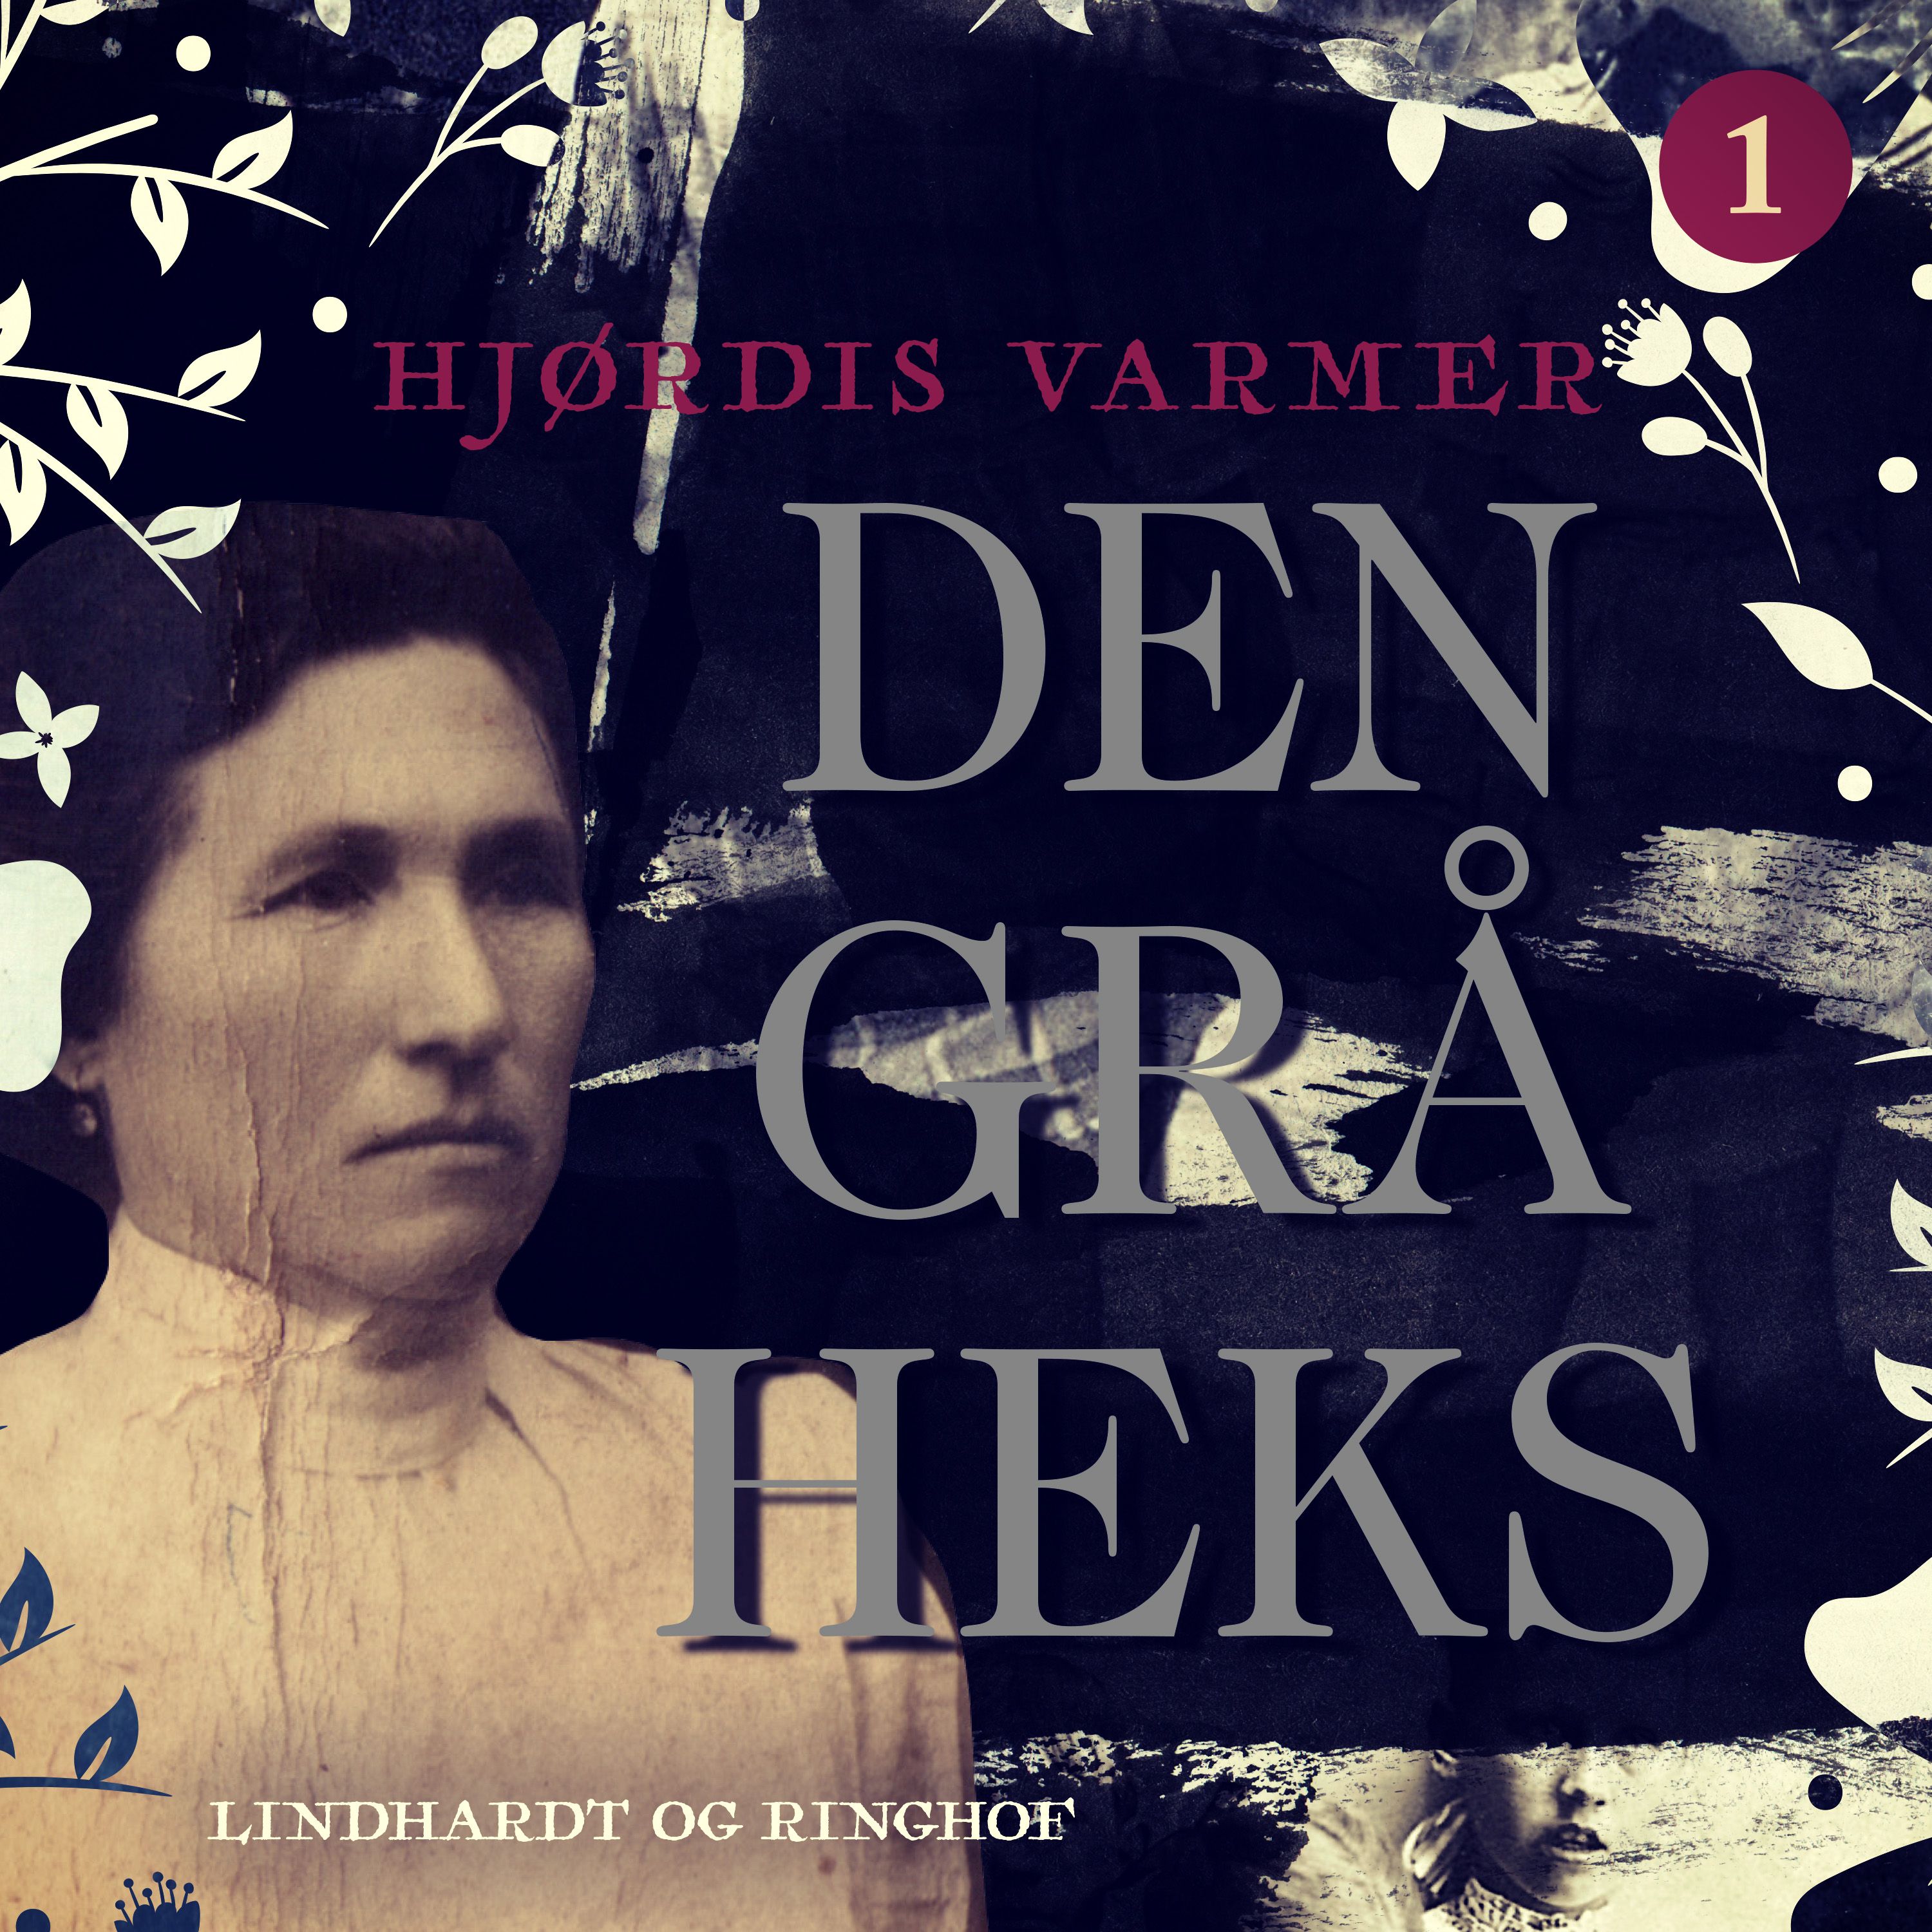 Den grå heks (1), ljudbok av Hjørdis Varmer